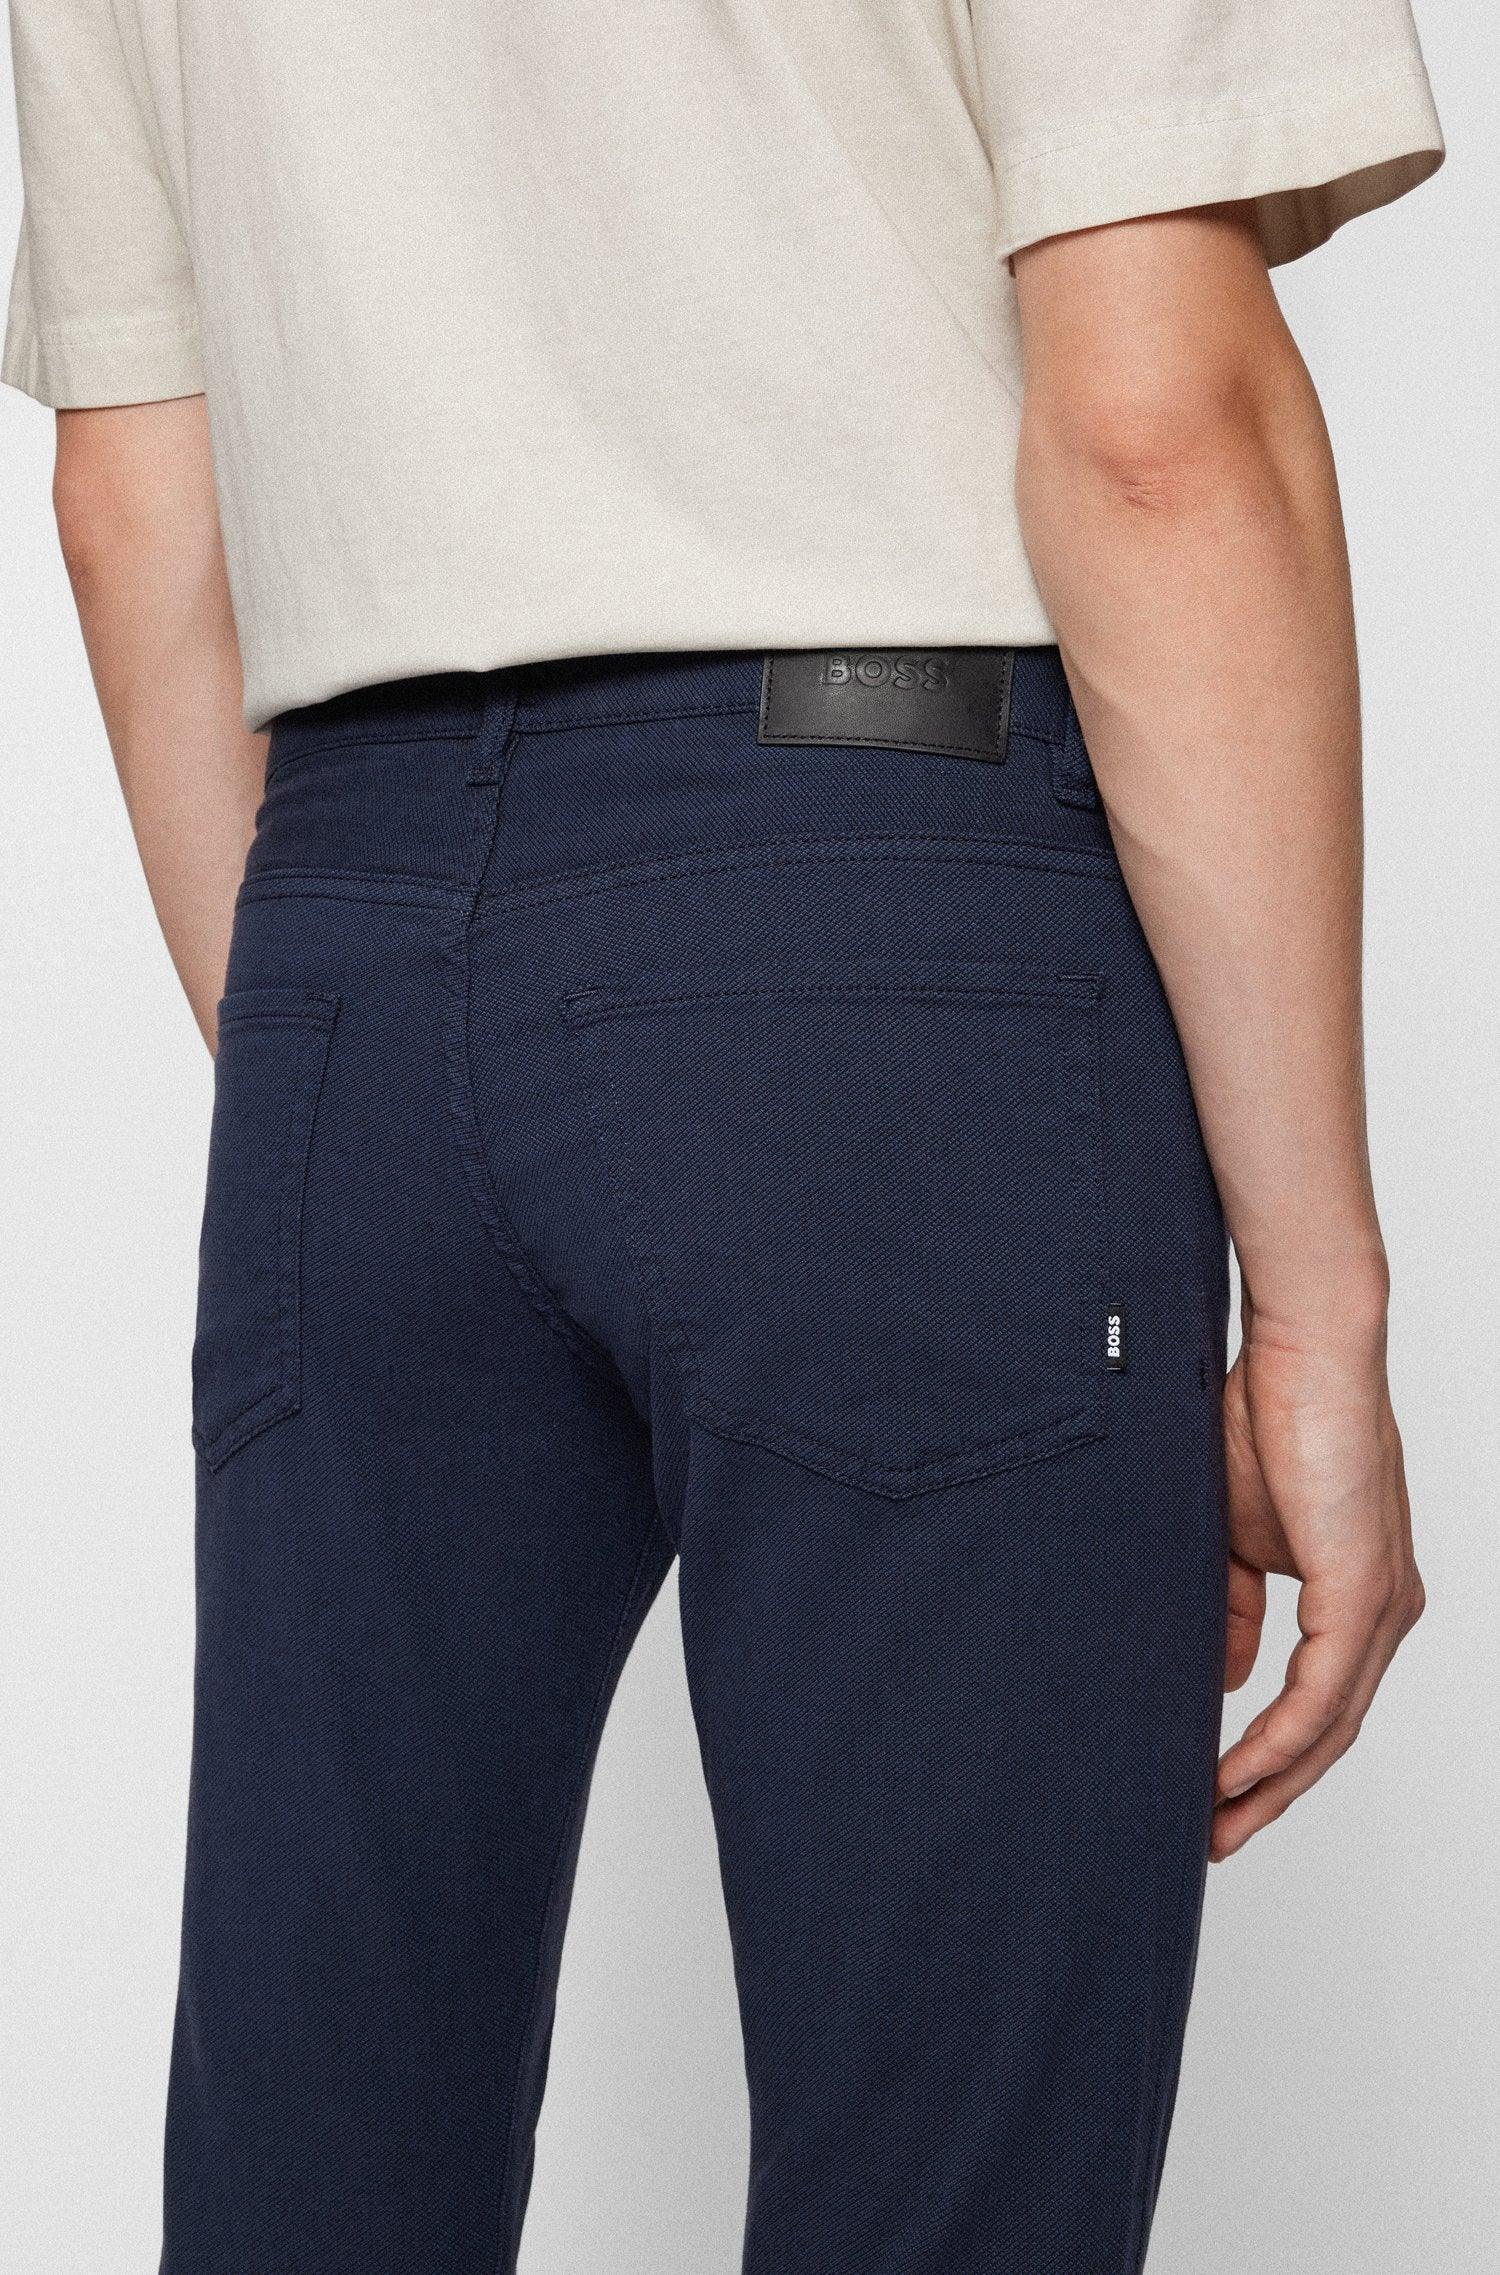 Jeans Casual Boss Slim Fit En Micro Estructuras Con Strech Navy - tiendadicons.com